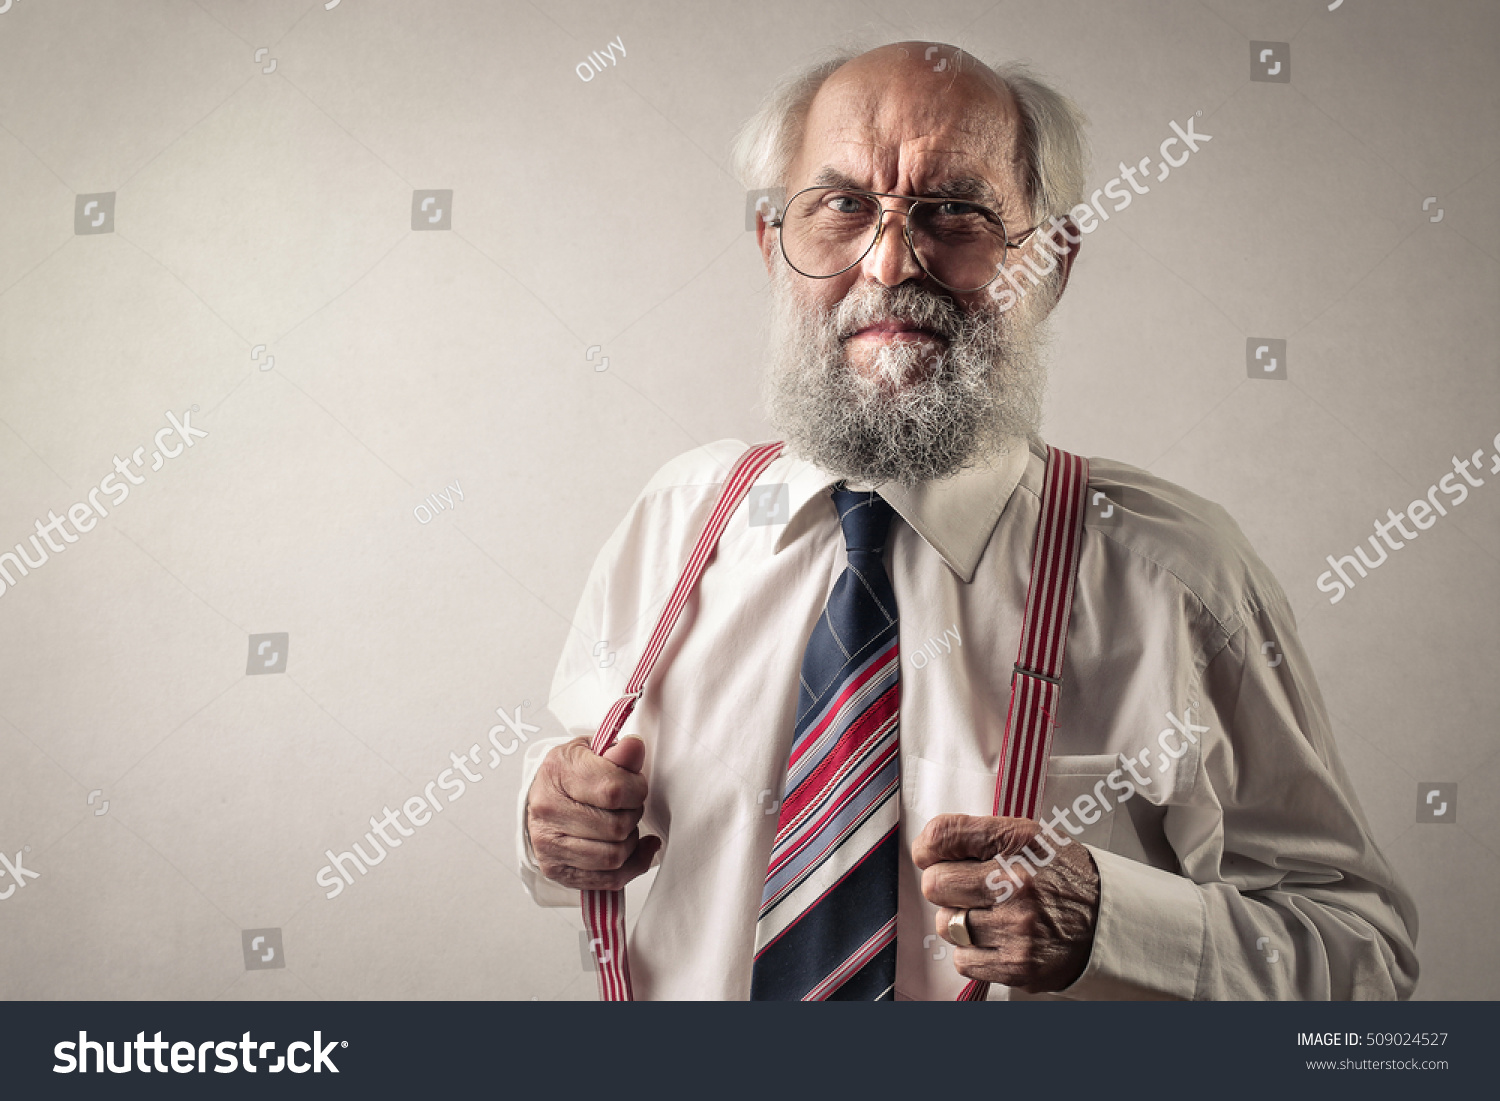 Old man wearing suspenders #509024527